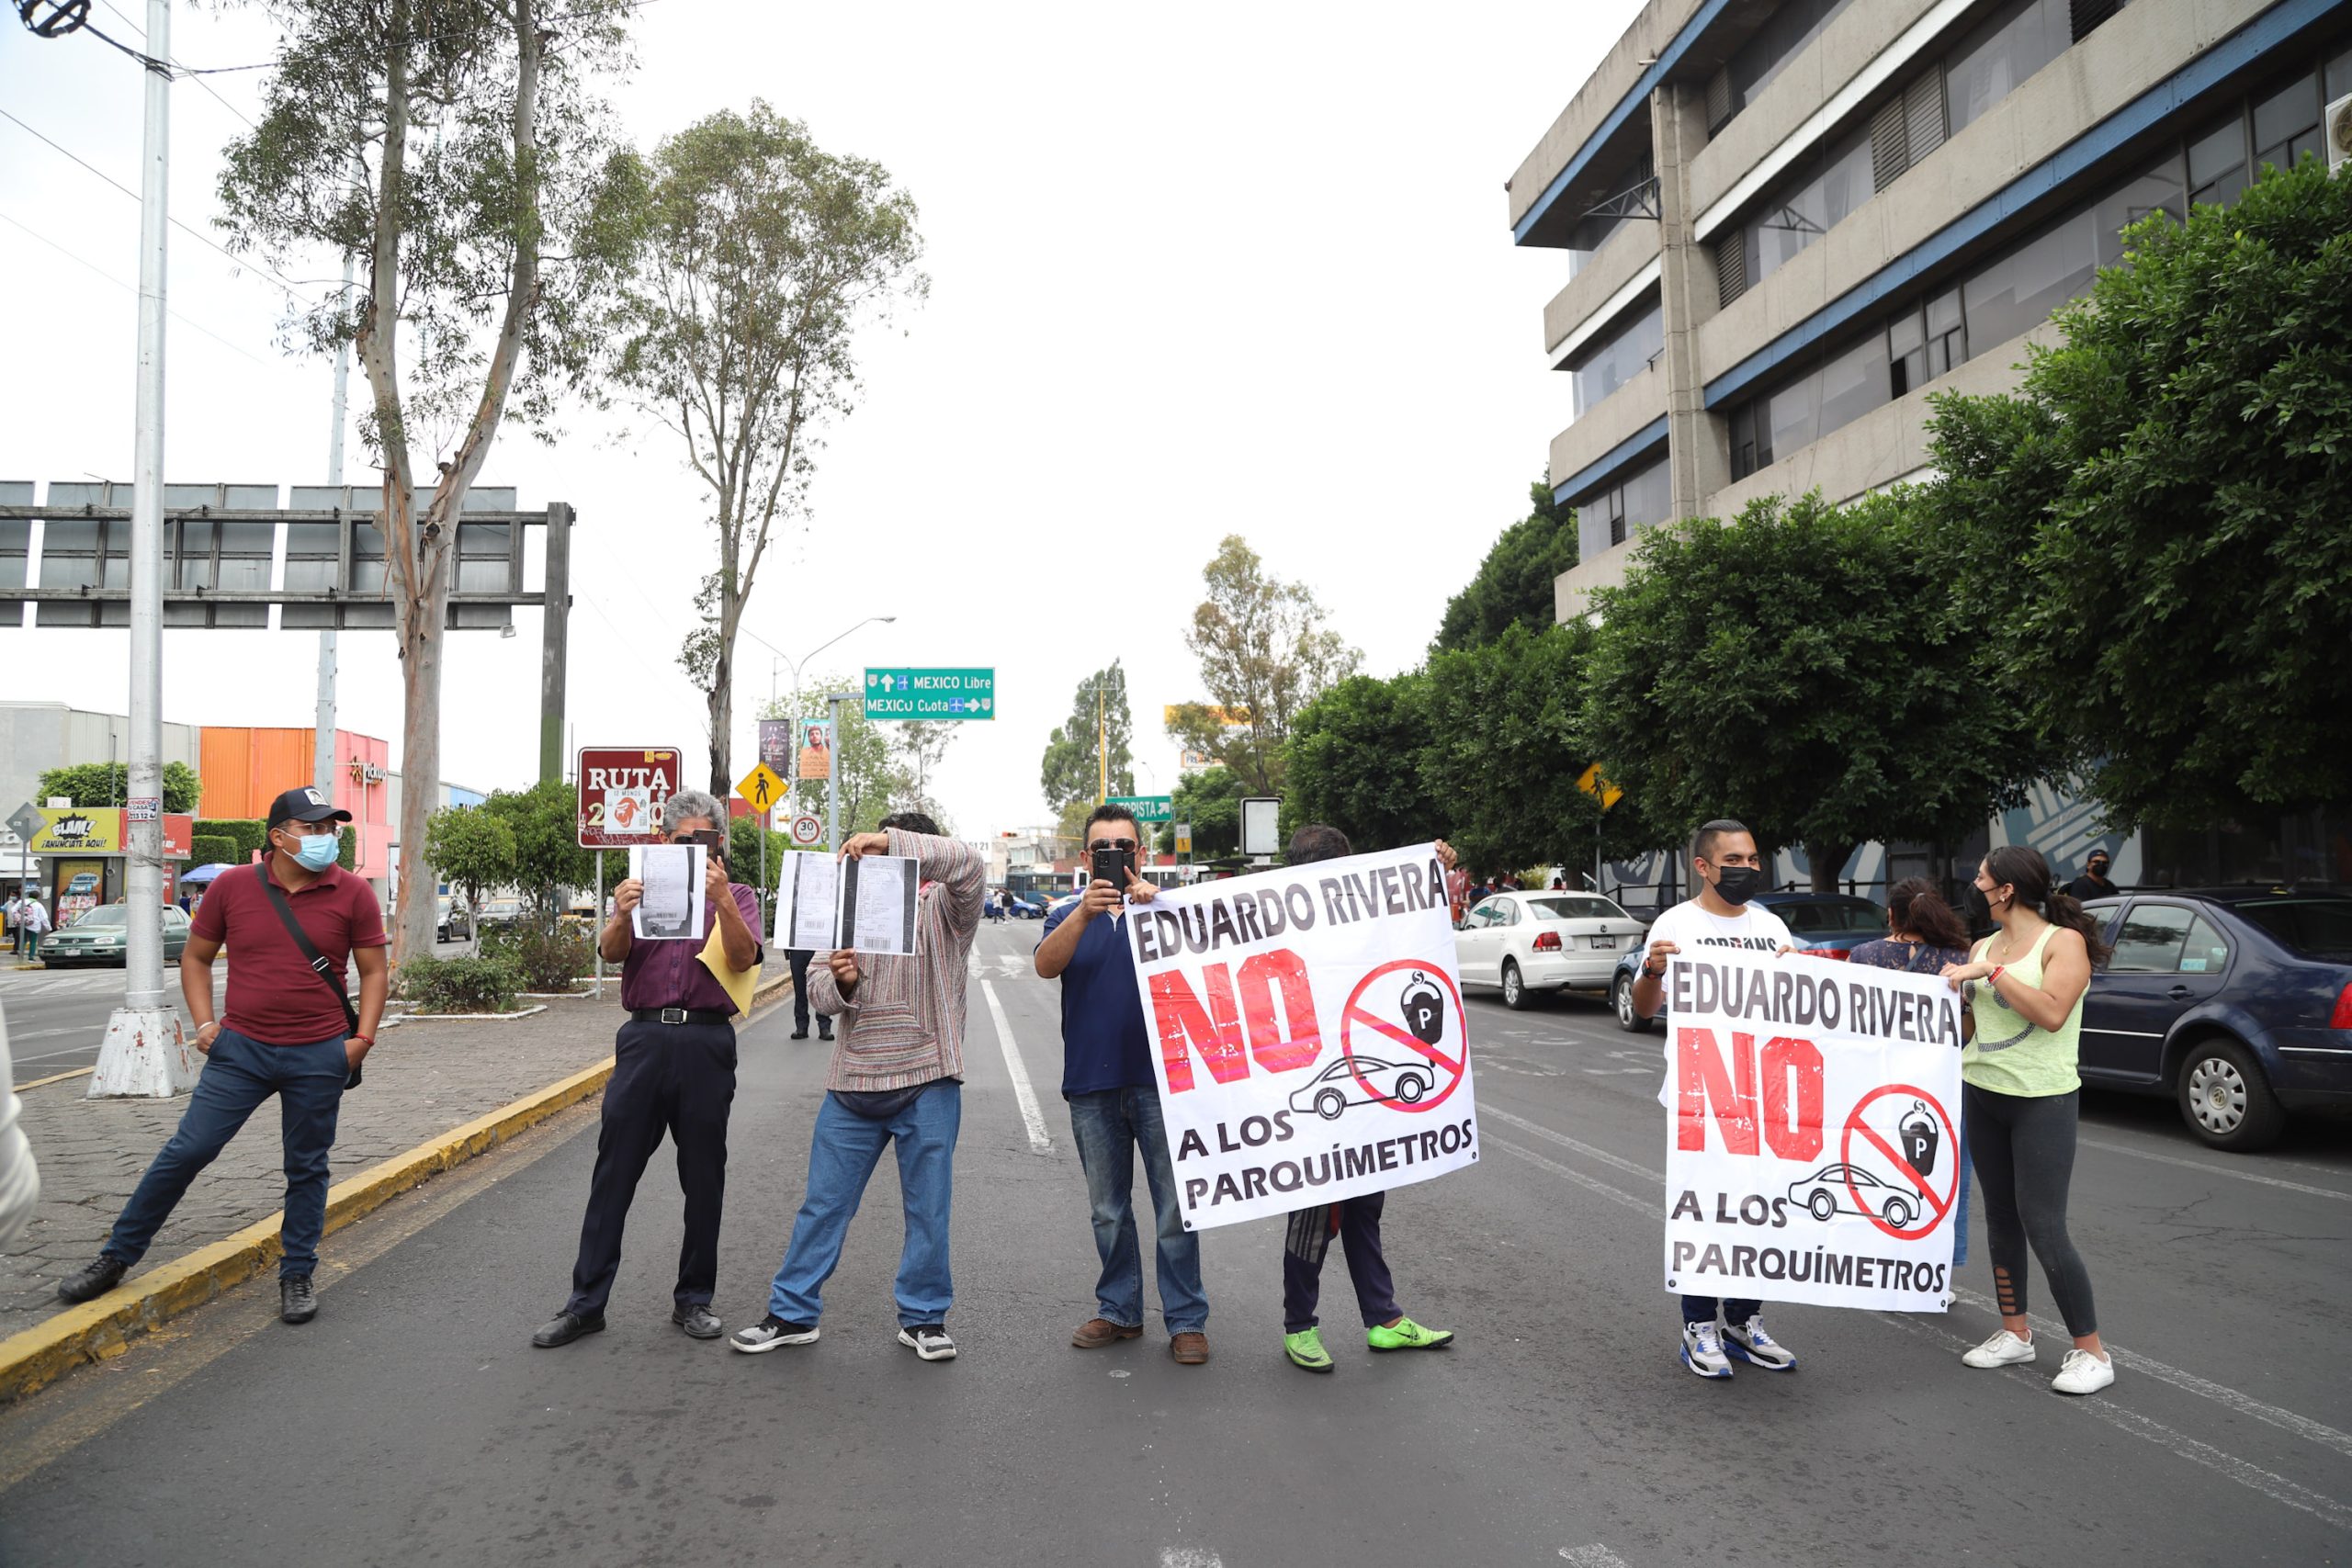 Protestas contra parquímetros continúan; cierran Prolongación Reforma